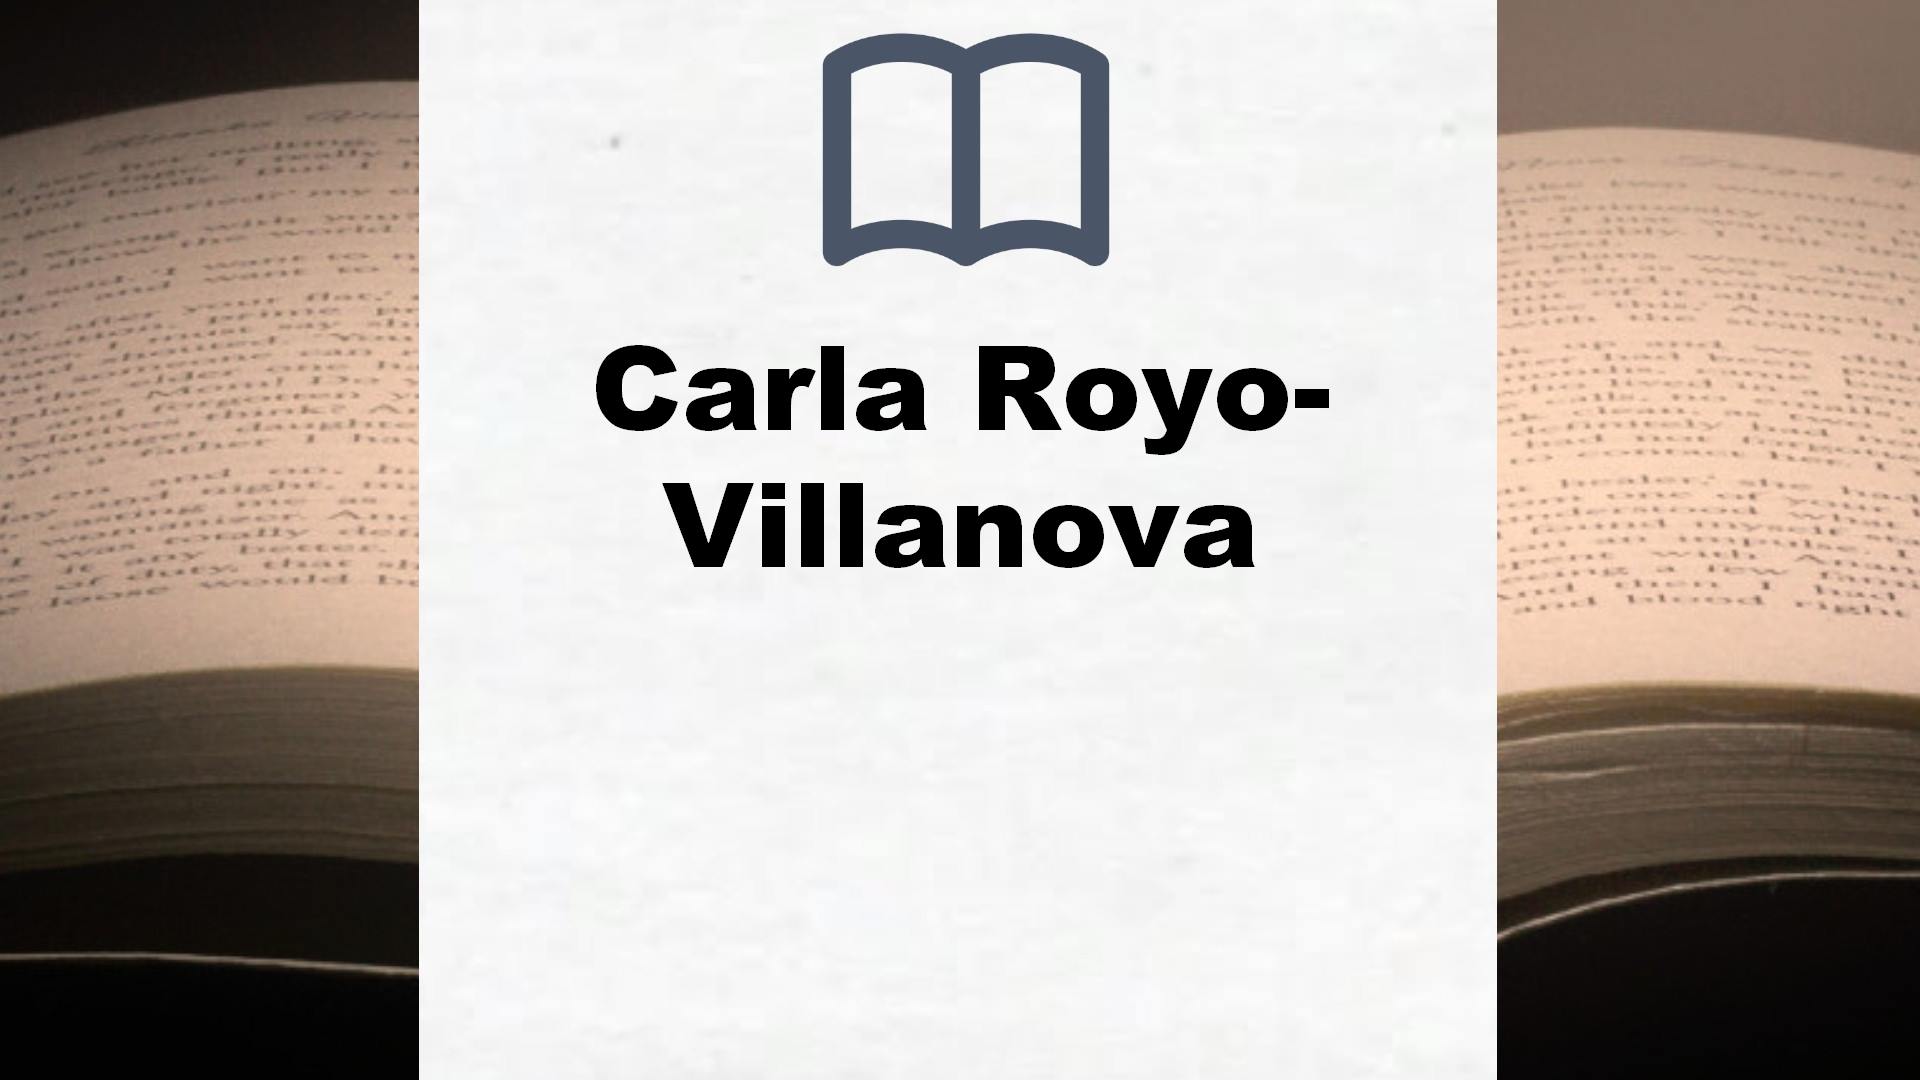 Libros Carla Royo-Villanova